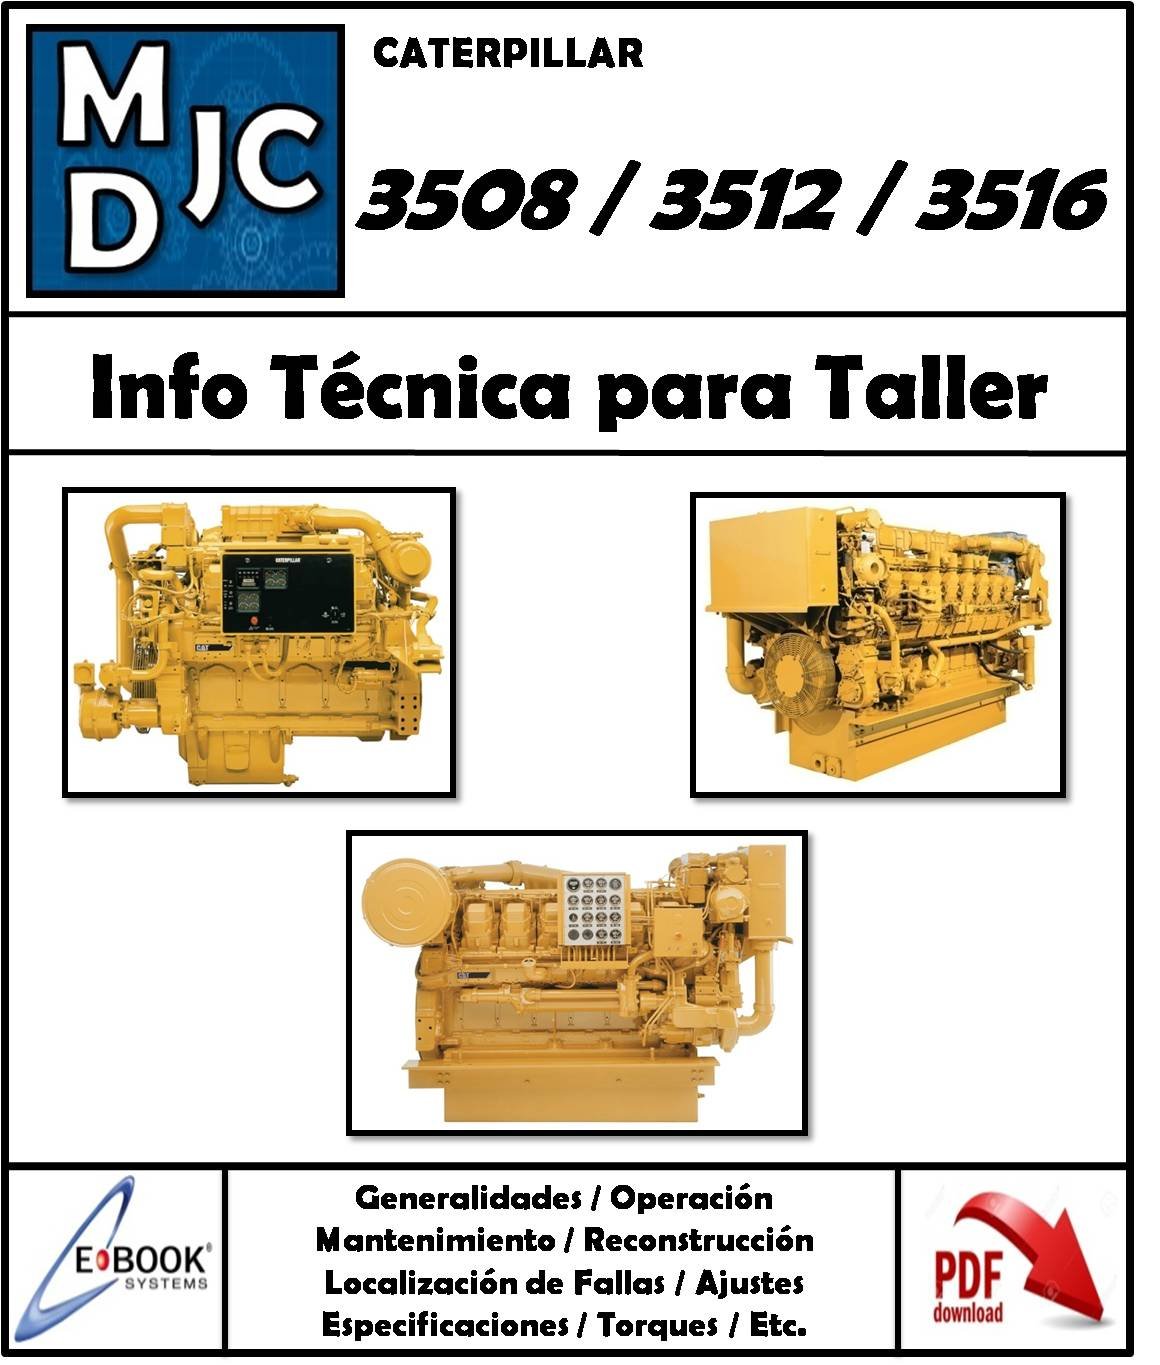 Manual de Información Técnica para Taller Motor Caterpillar 3508 / 3512 / 3516